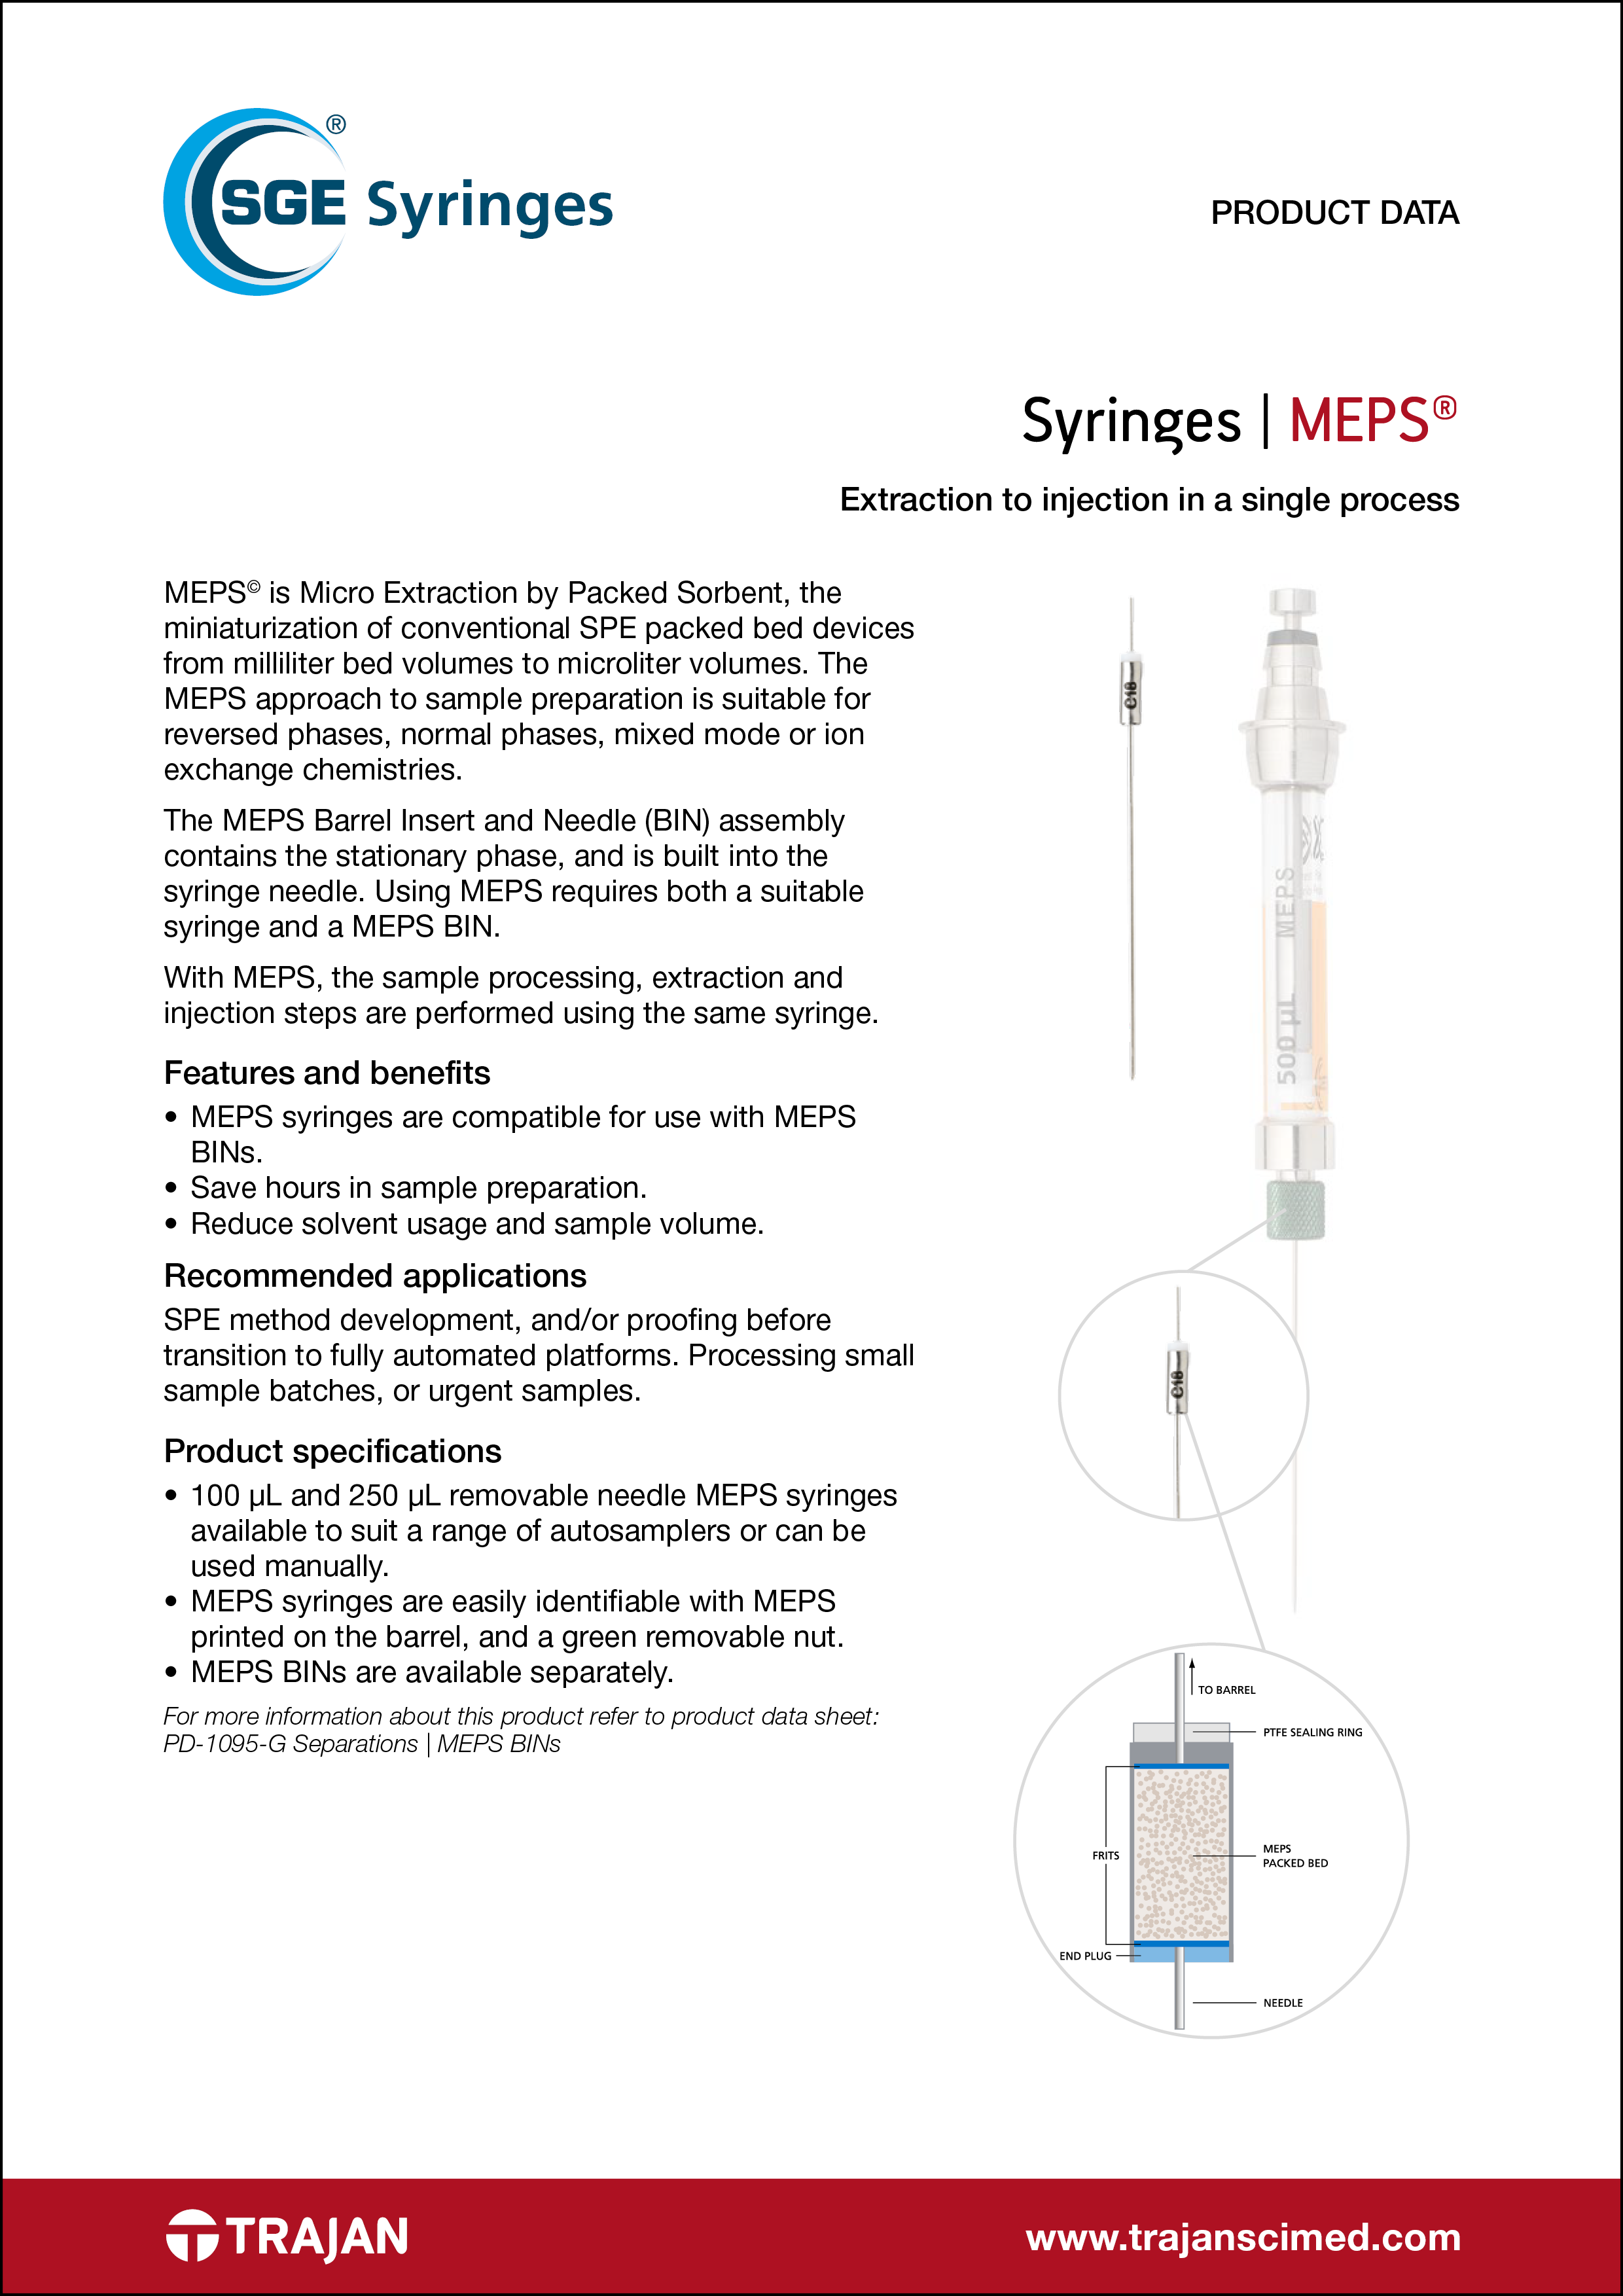 Product Data Sheet - MEPS syringes